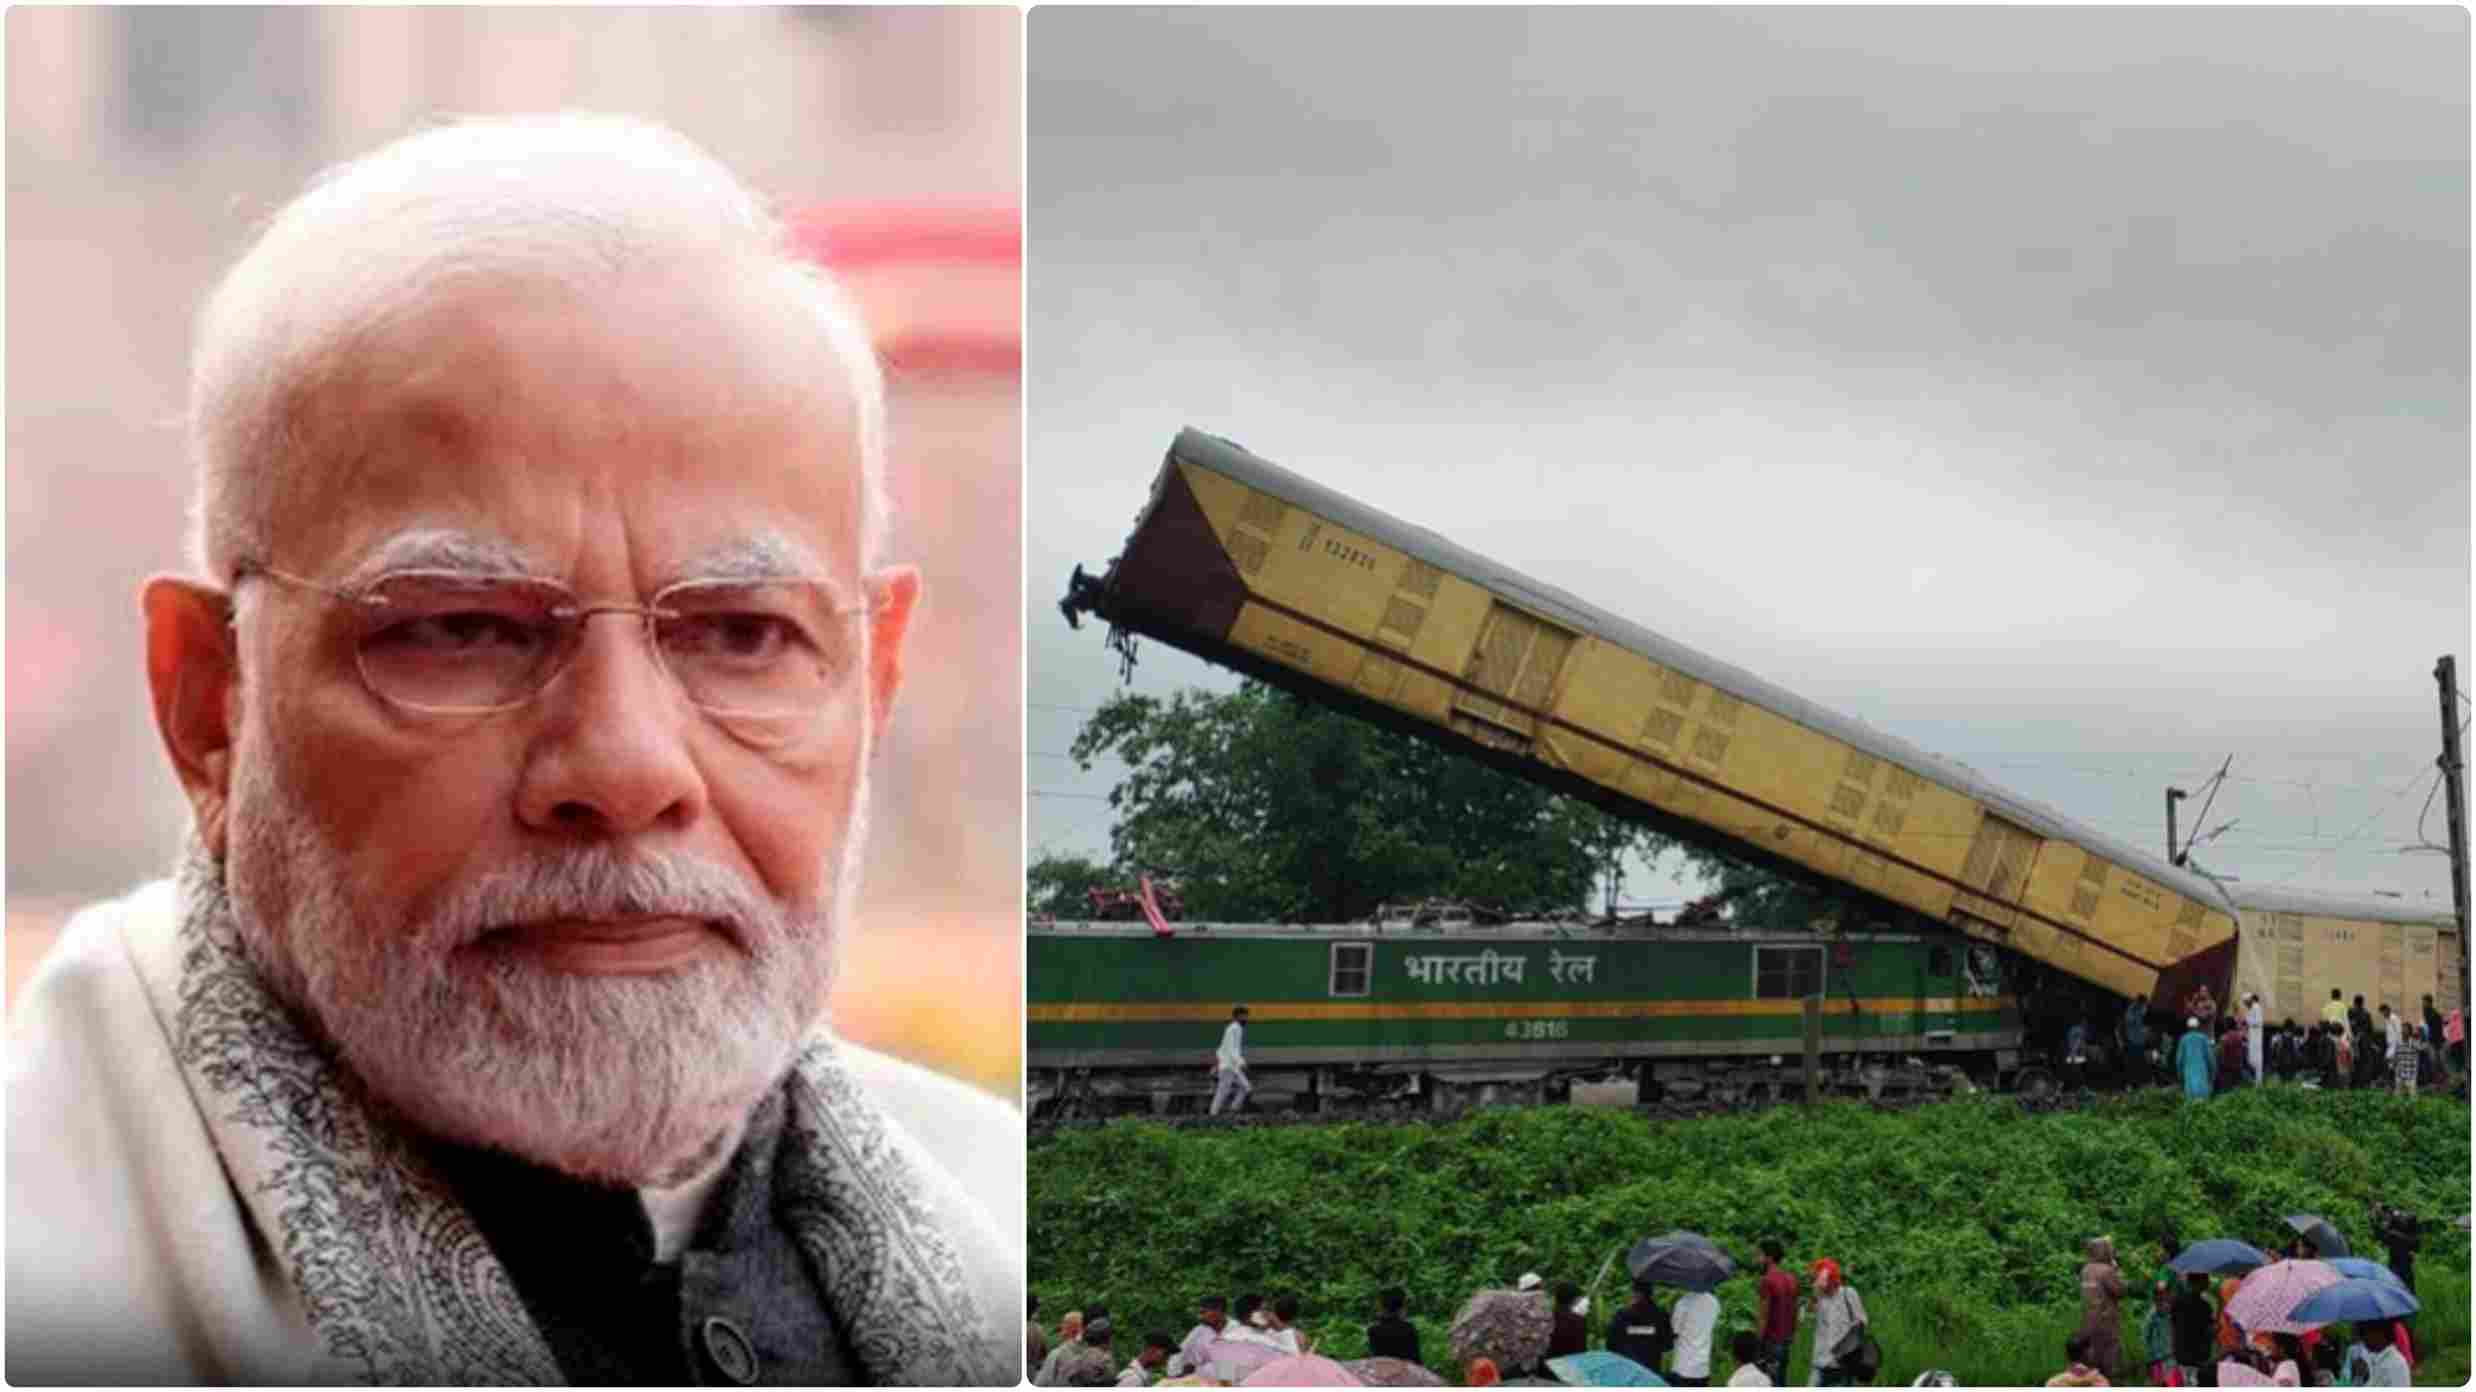 बंगाल ट्रेन हादसे में कम से कम 15 लोगों की मौत, 60 घायल; प्रधानमंत्री मोदी ने की अनुग्रह राशि की घोषणा